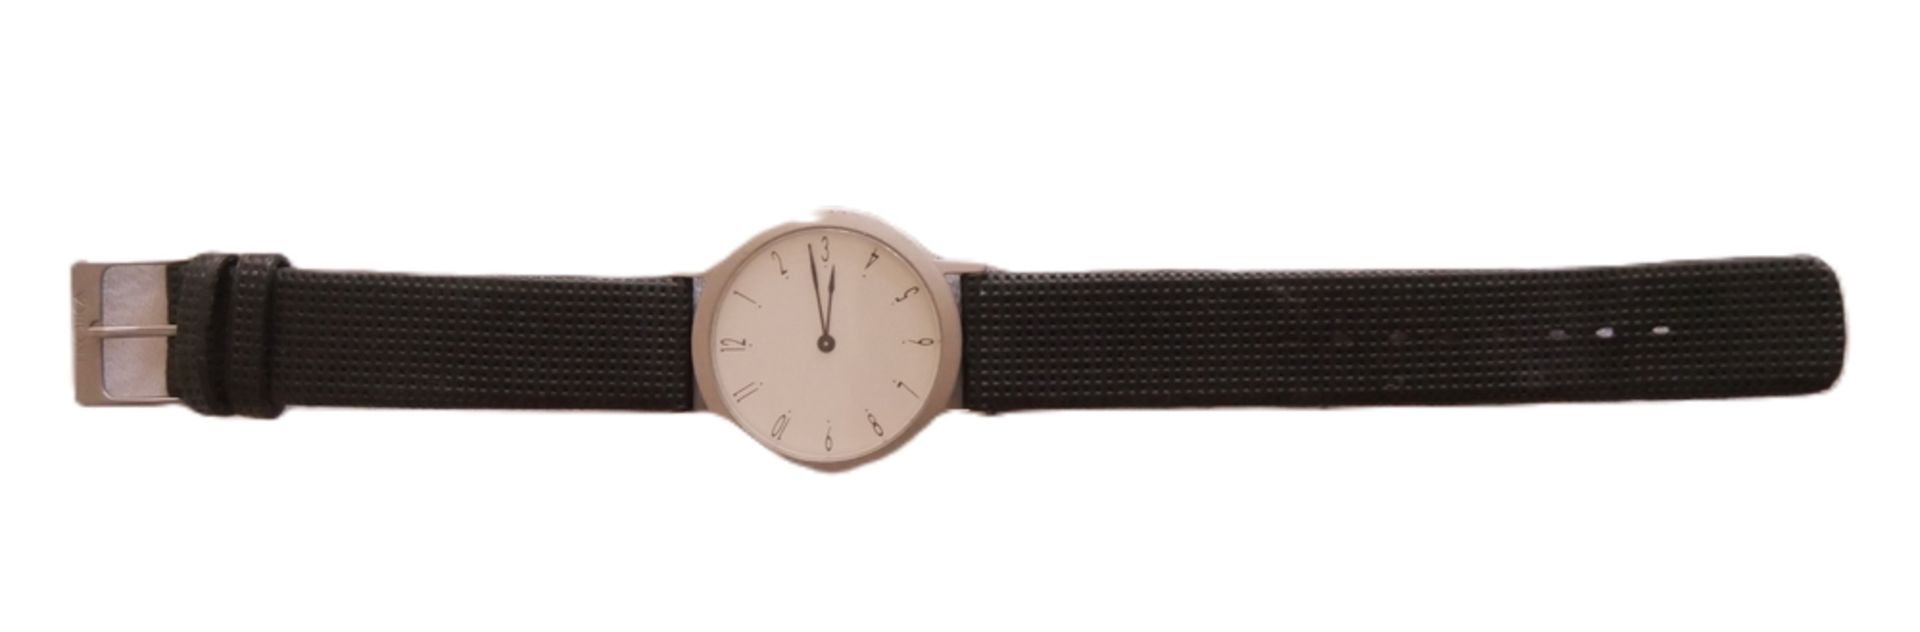 Herren Armbanduhr "Troika Design 99" getragener Zustand. Funktion nicht geprüft